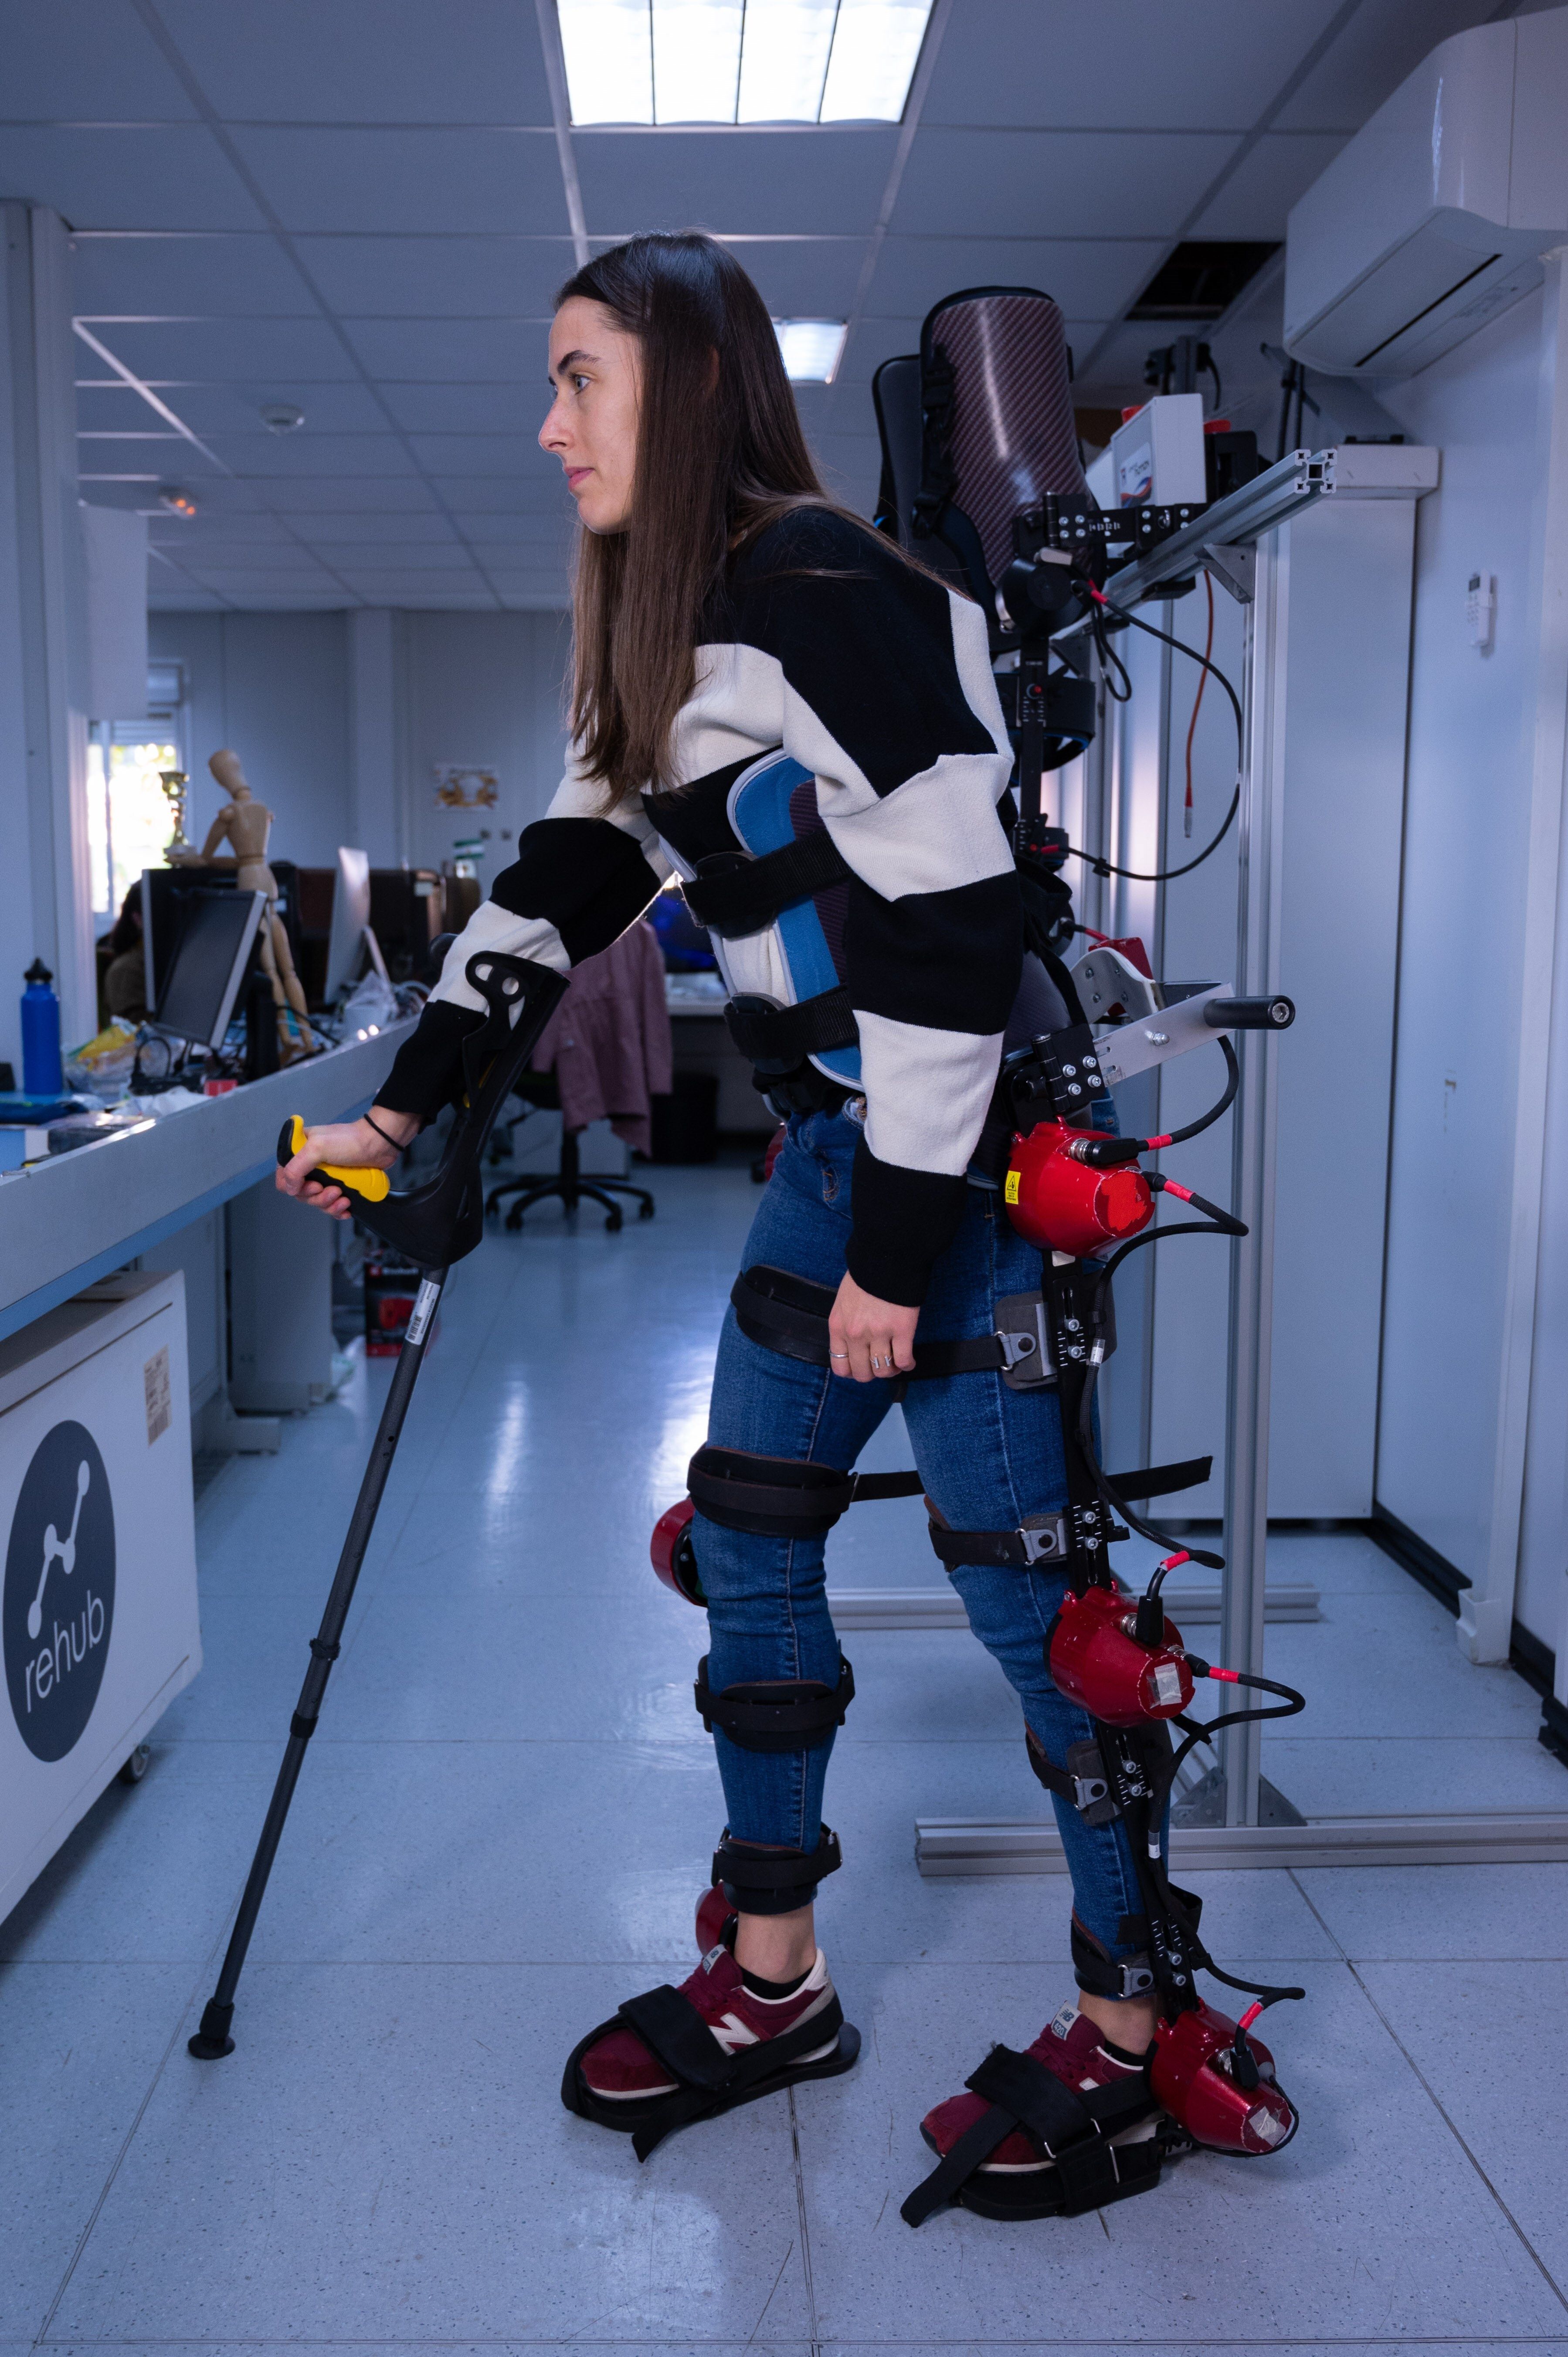 El CSIC desarrolla exoesqueletos robóticos que ayudan al cerebro a caminar